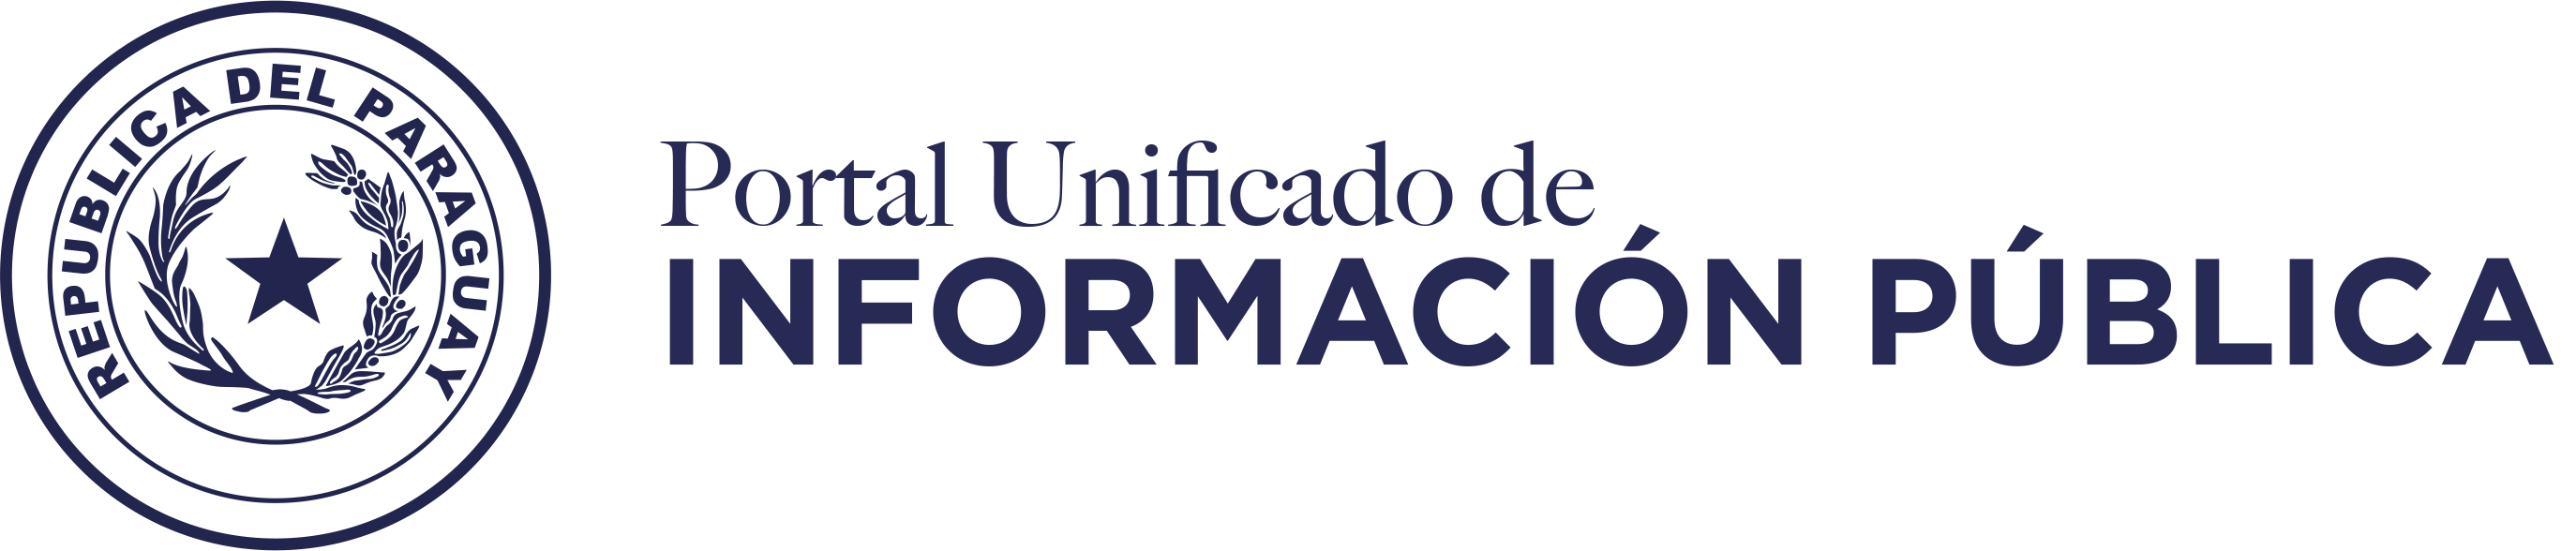 Logo Portal unificado de información pública